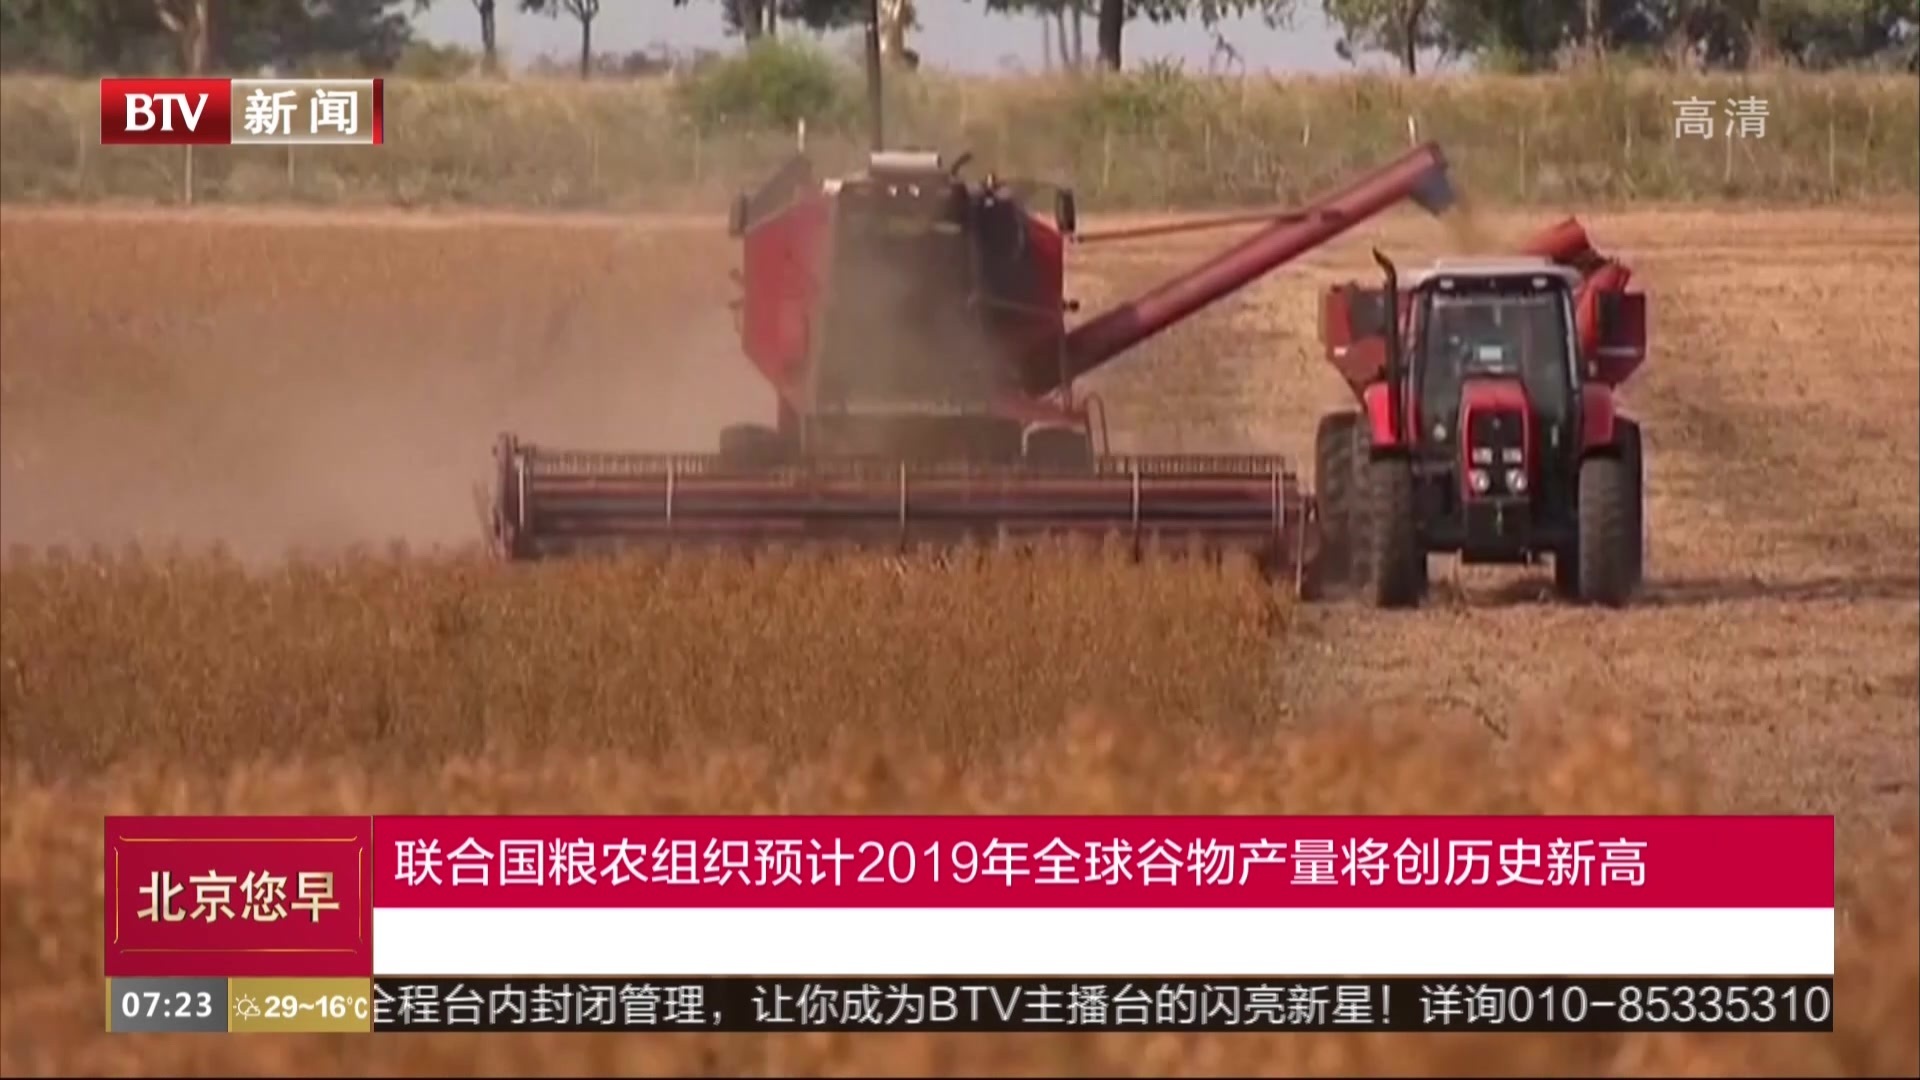 联合国粮农组织预计2019年全球谷物产量将创历史新高